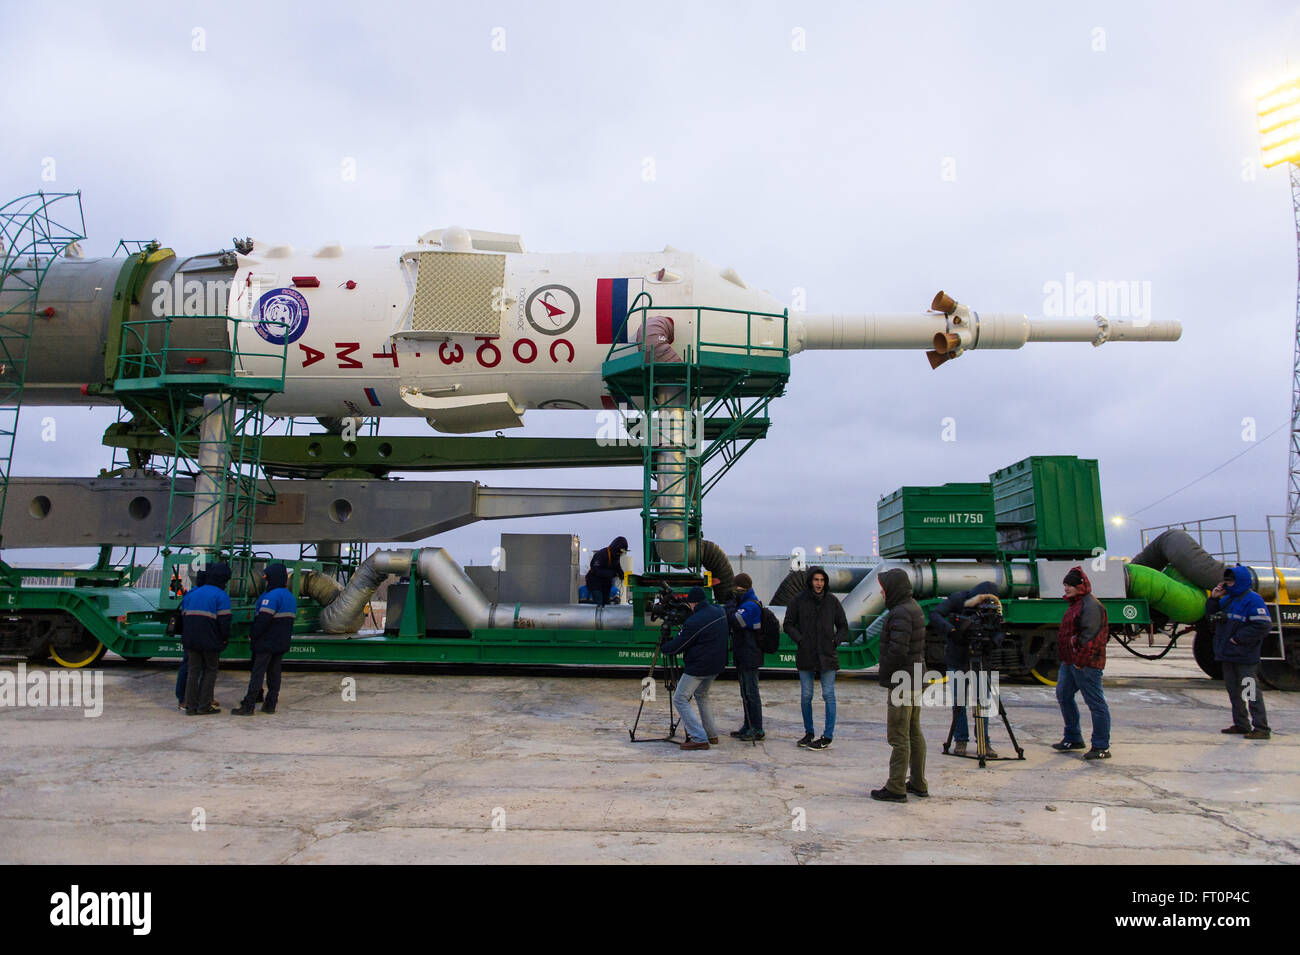 Le vaisseau Soyouz TMA-20M est sécurisée à l'aire de lancement après les opérations de soulever la fusée a été retardée, en raison des vents forts Mercredi, 16 mars 2016 au cosmodrome de Baïkonour au Kazakhstan. Lancement de la fusée Soyouz est prévue pour mars 19 et 47 de l'expédition commandant de Soyouz Alexey Ovchinin de Roscosmos, mécanicien de Jeff Williams, de la NASA, et l'ingénieur de vol Oleg Skripochka de Roscosmos en orbite pour commencer leur voyage de cinq mois et demi de mission sur la Station spatiale internationale. Banque D'Images